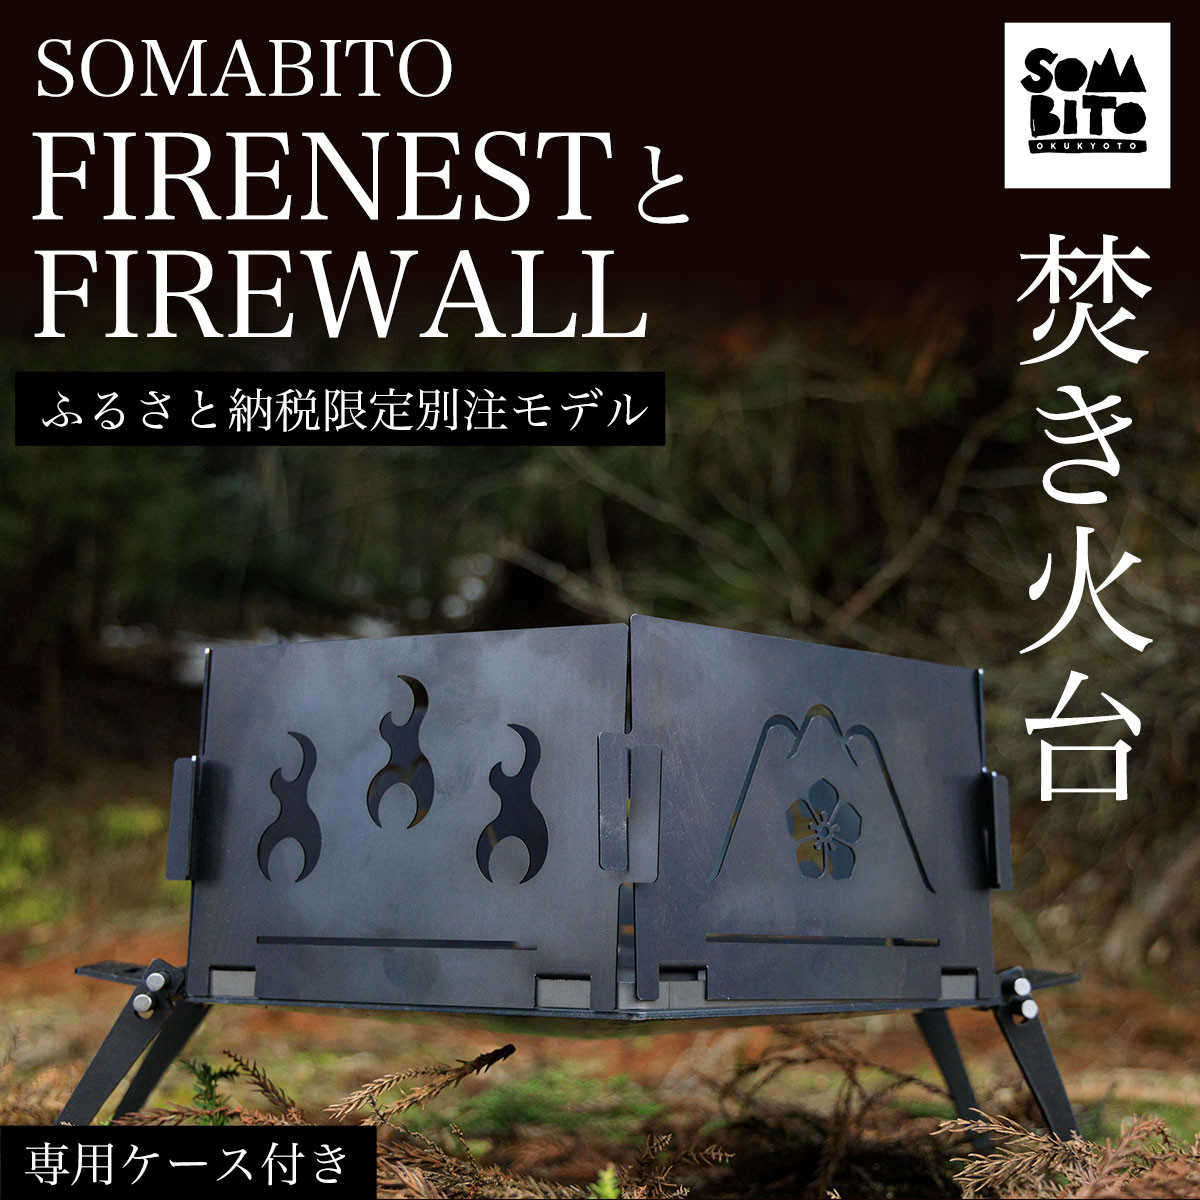 ソマビト somabito 焚き火サイドスタンド 専用ケースセット - テーブル